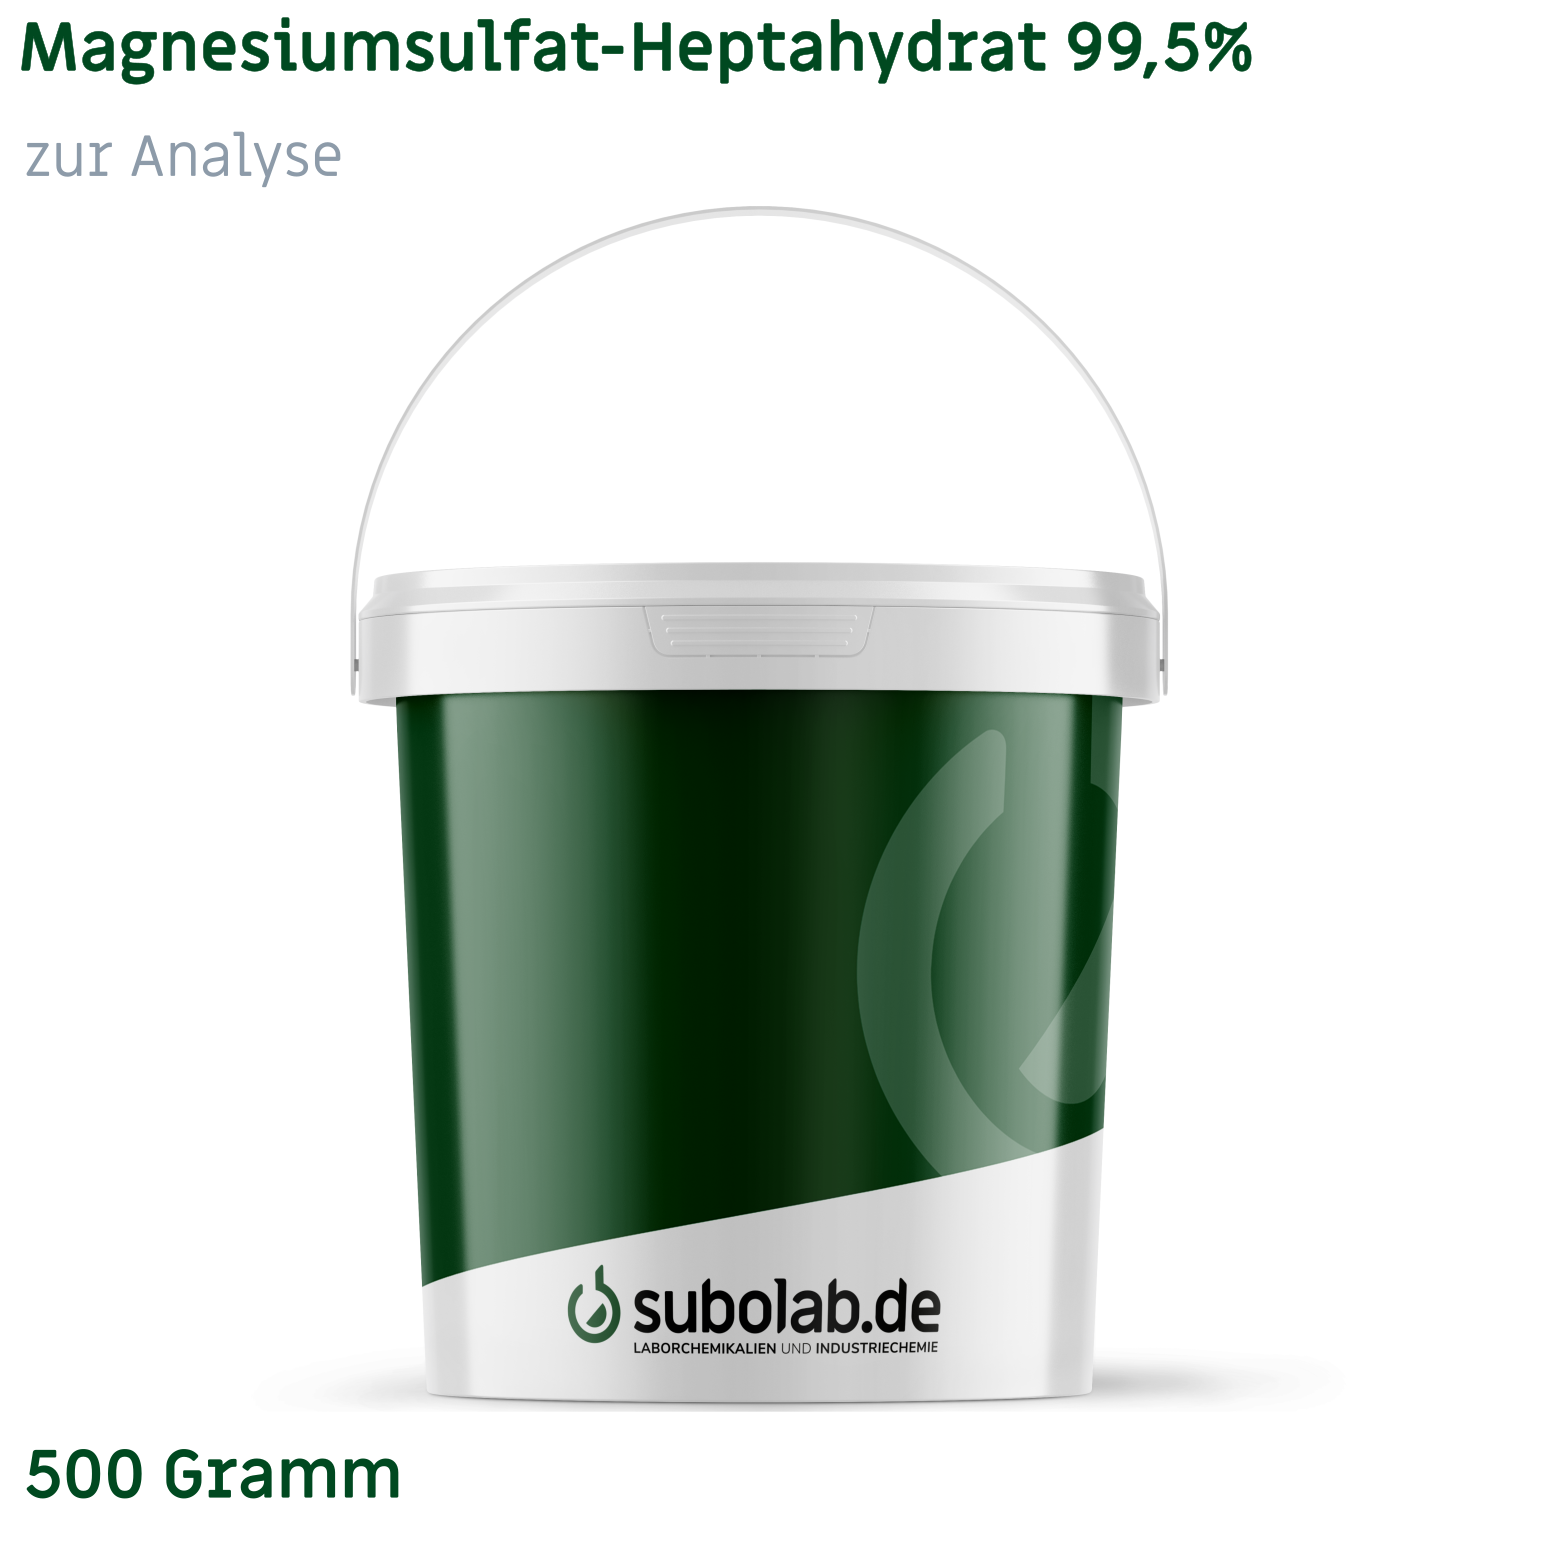 Bild von Magnesiumsulfat - Heptahydrat 99,5% zur Analyse (500 Gramm)